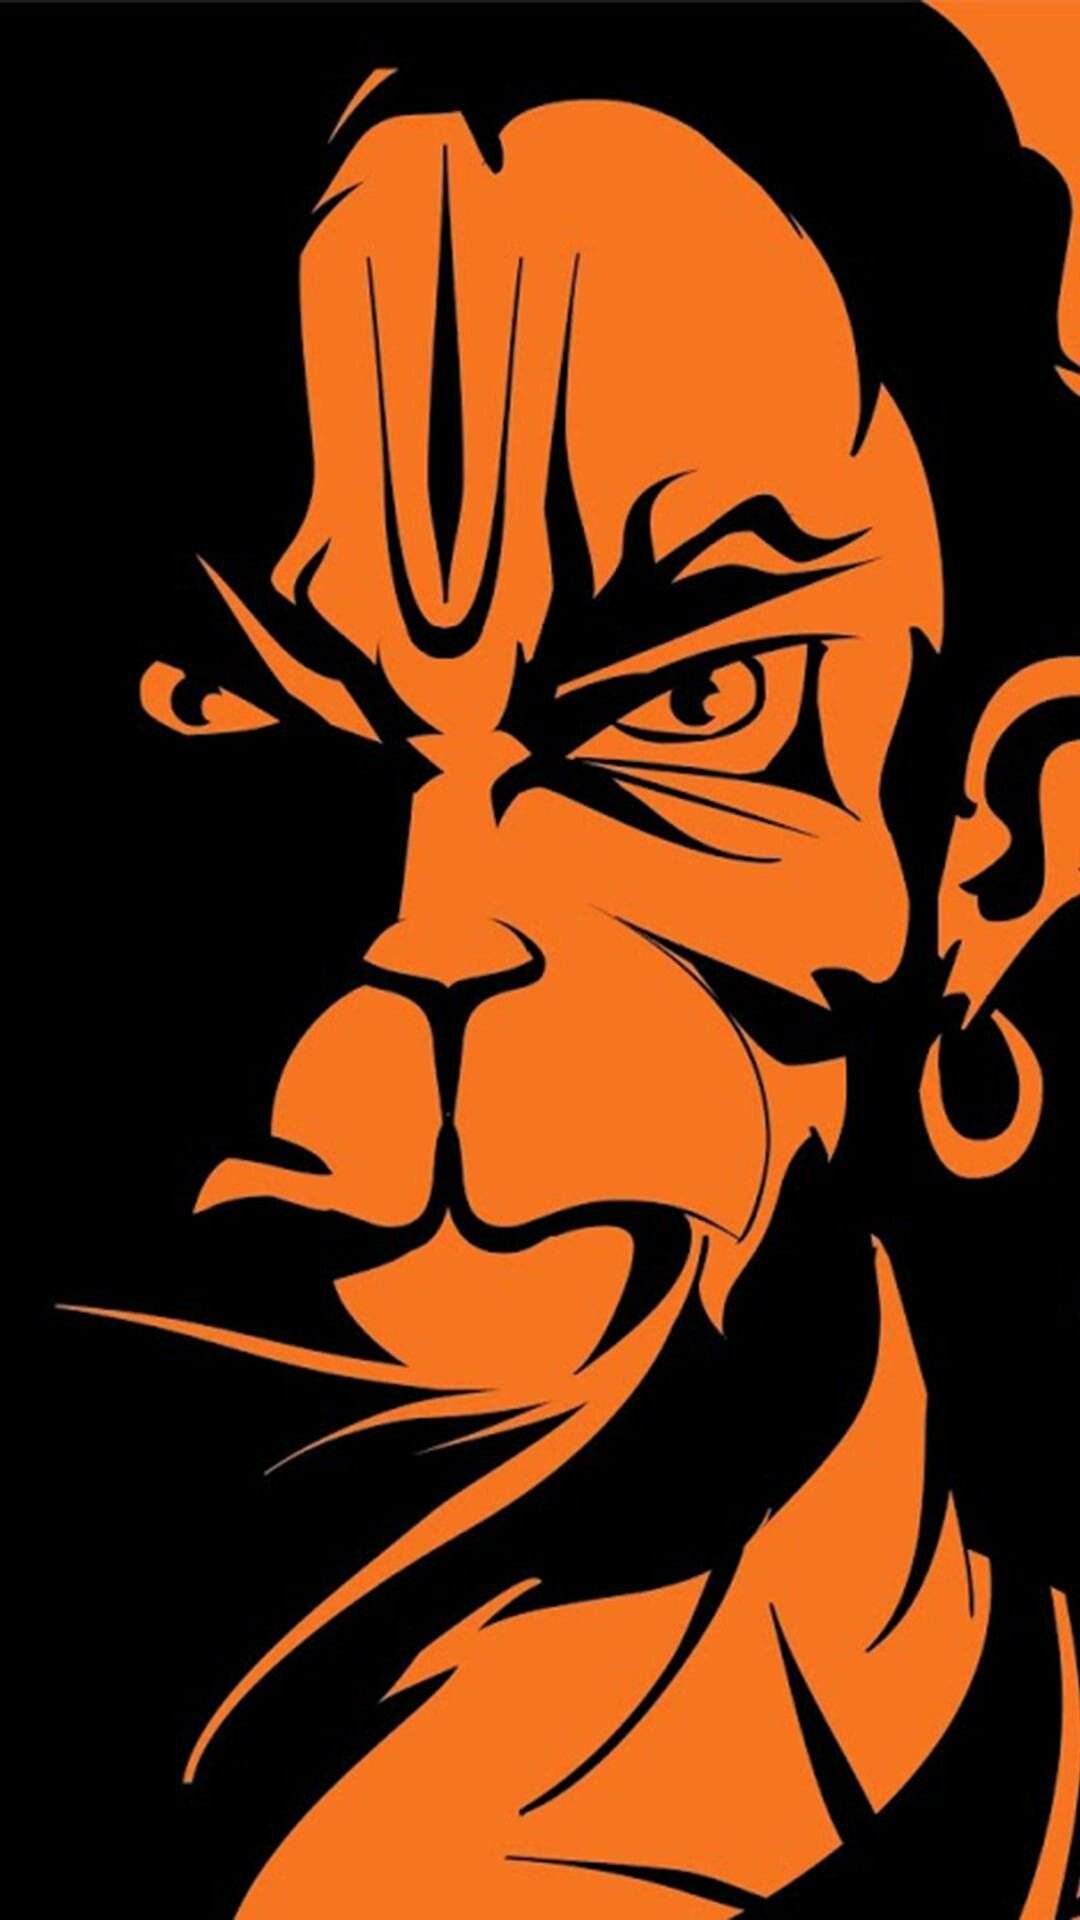 Jai Hanuman - Jai Shri Ram